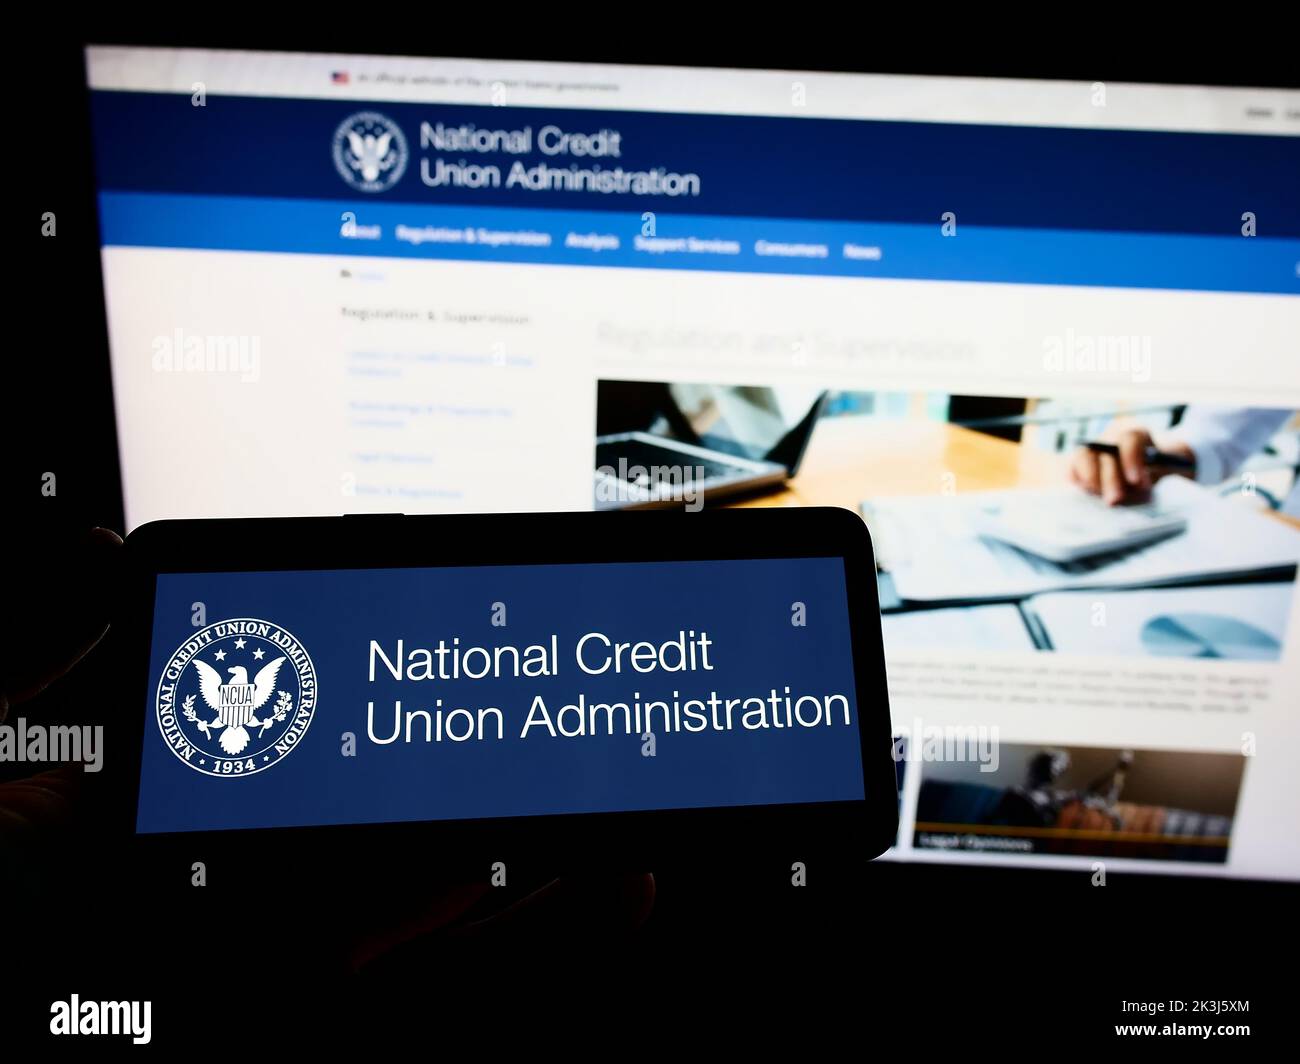 Personne tenant un smartphone avec le logo de la National Credit Union Administration (NCUA) des États-Unis sur l'écran devant le site Web. Mise au point sur l'affichage du téléphone. Banque D'Images